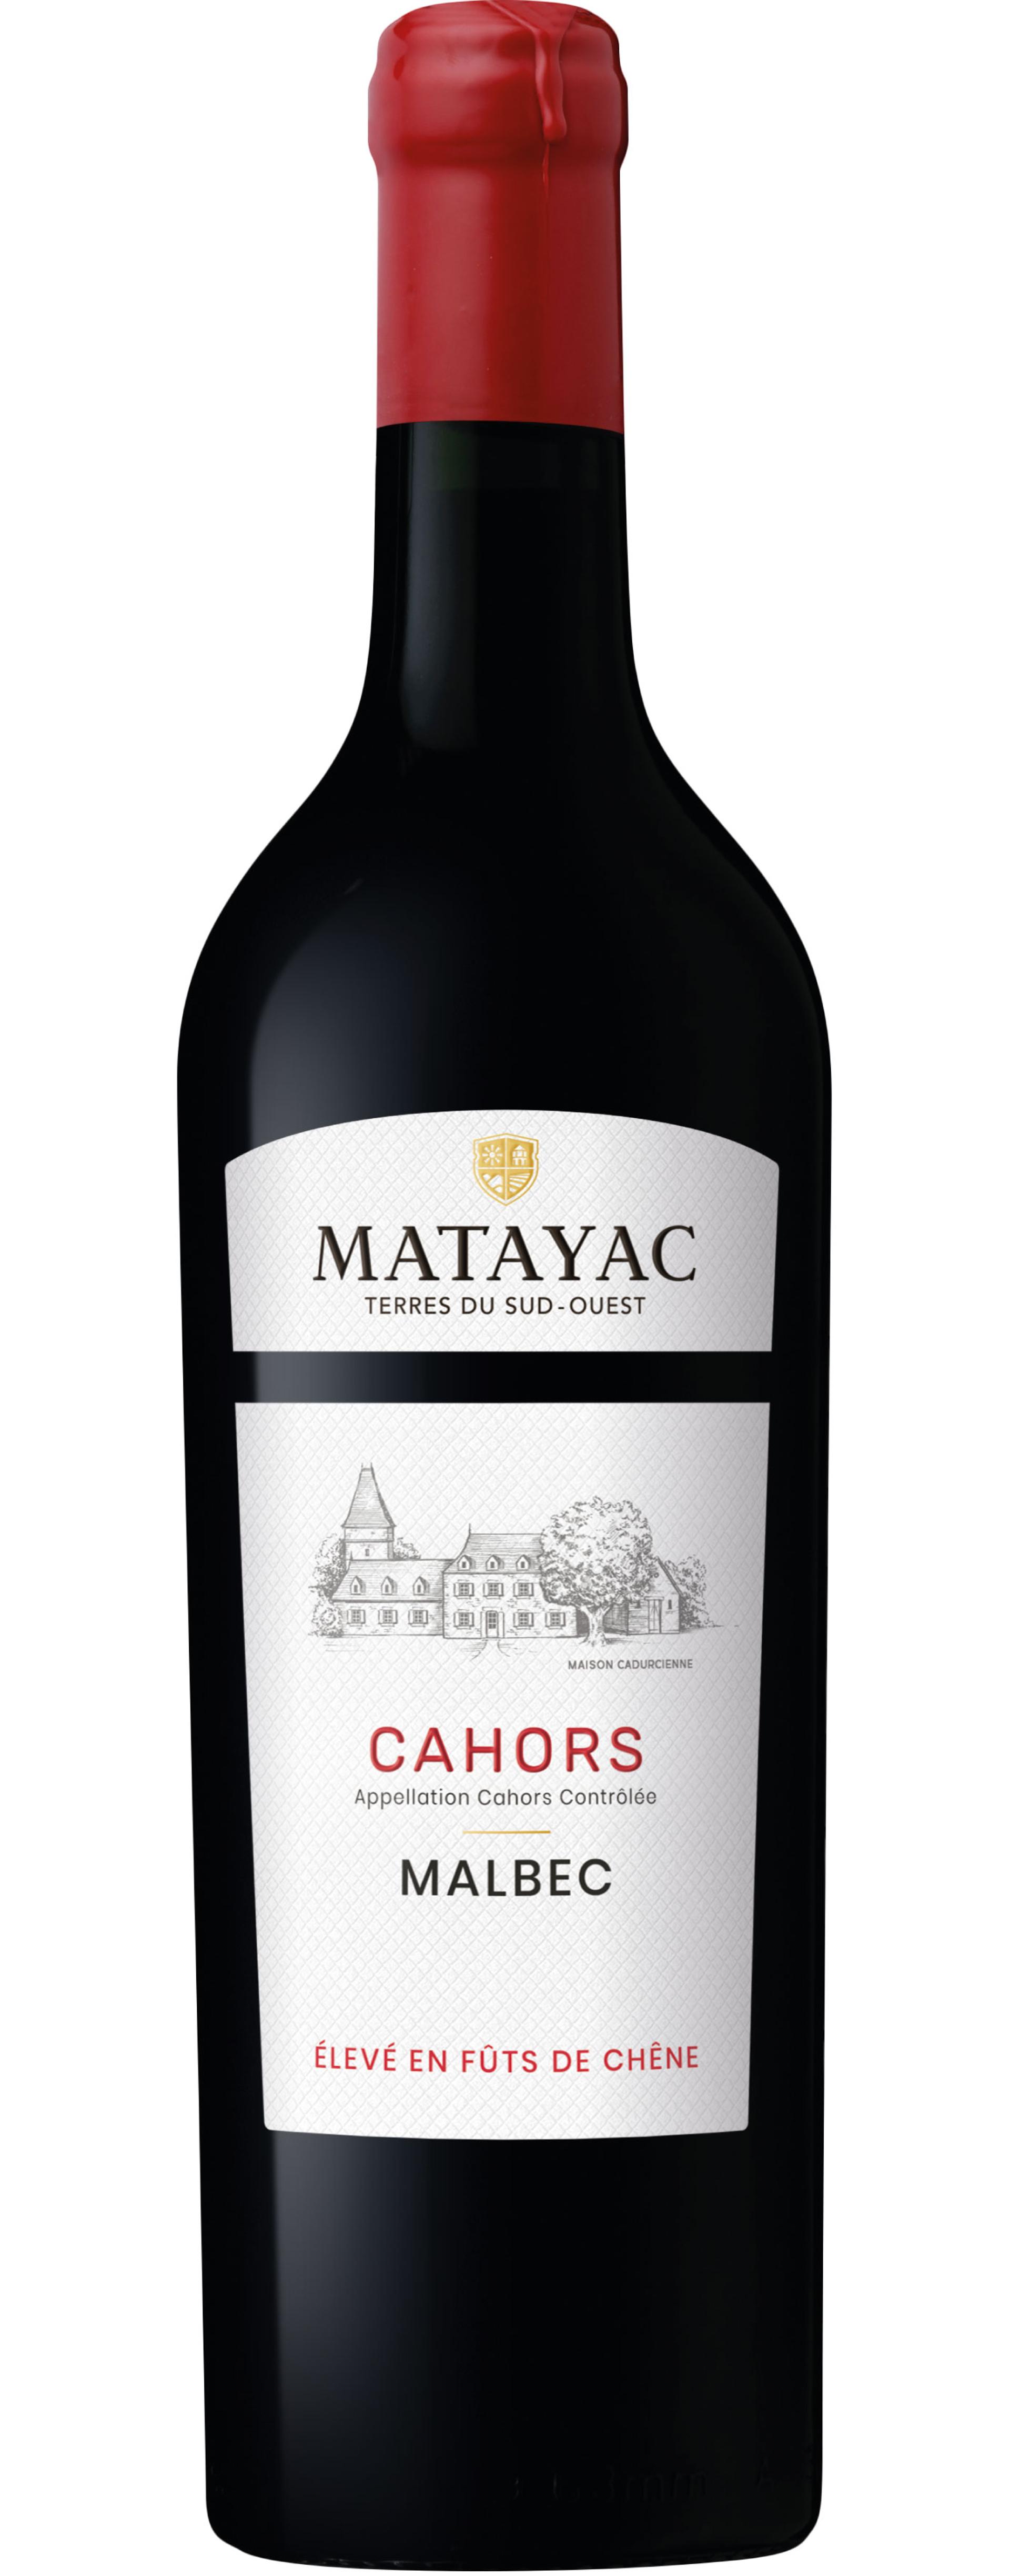 Matayac Cahors